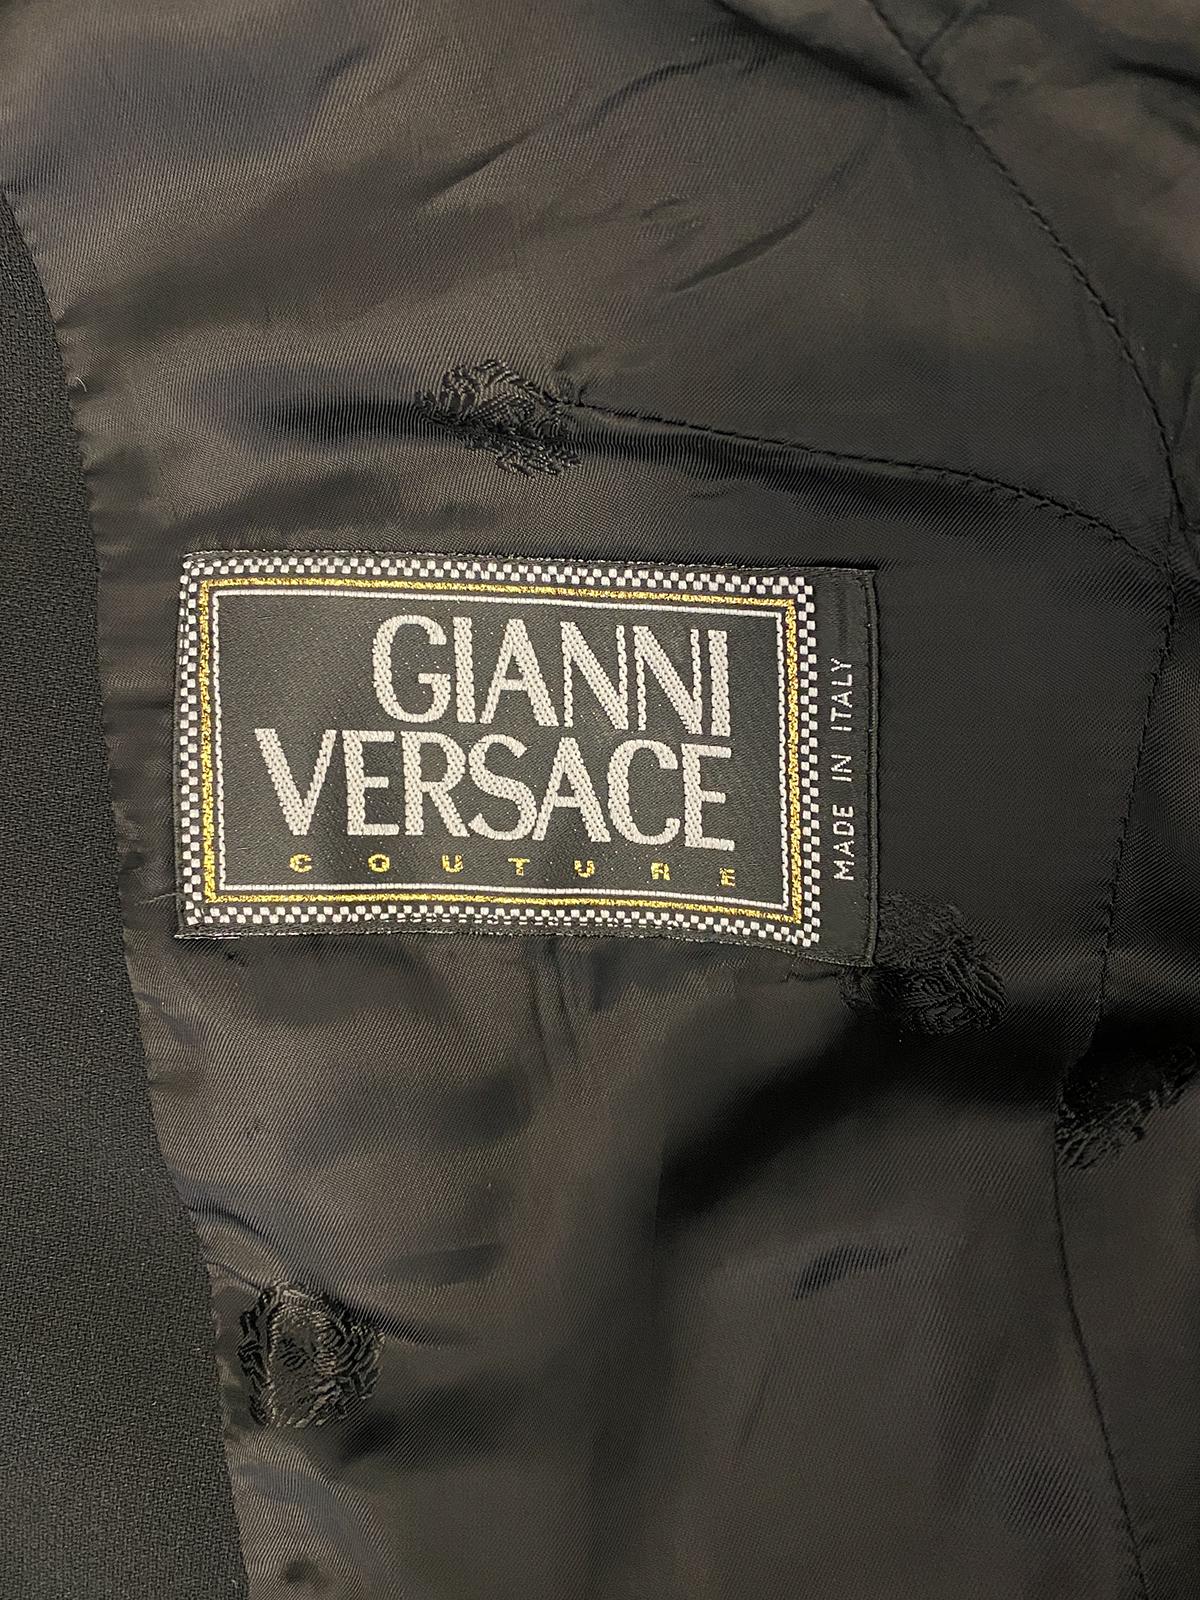 VERSACE Vintage 1997 Contour Skirt Suit Gianni Versace Couture For Sale 2